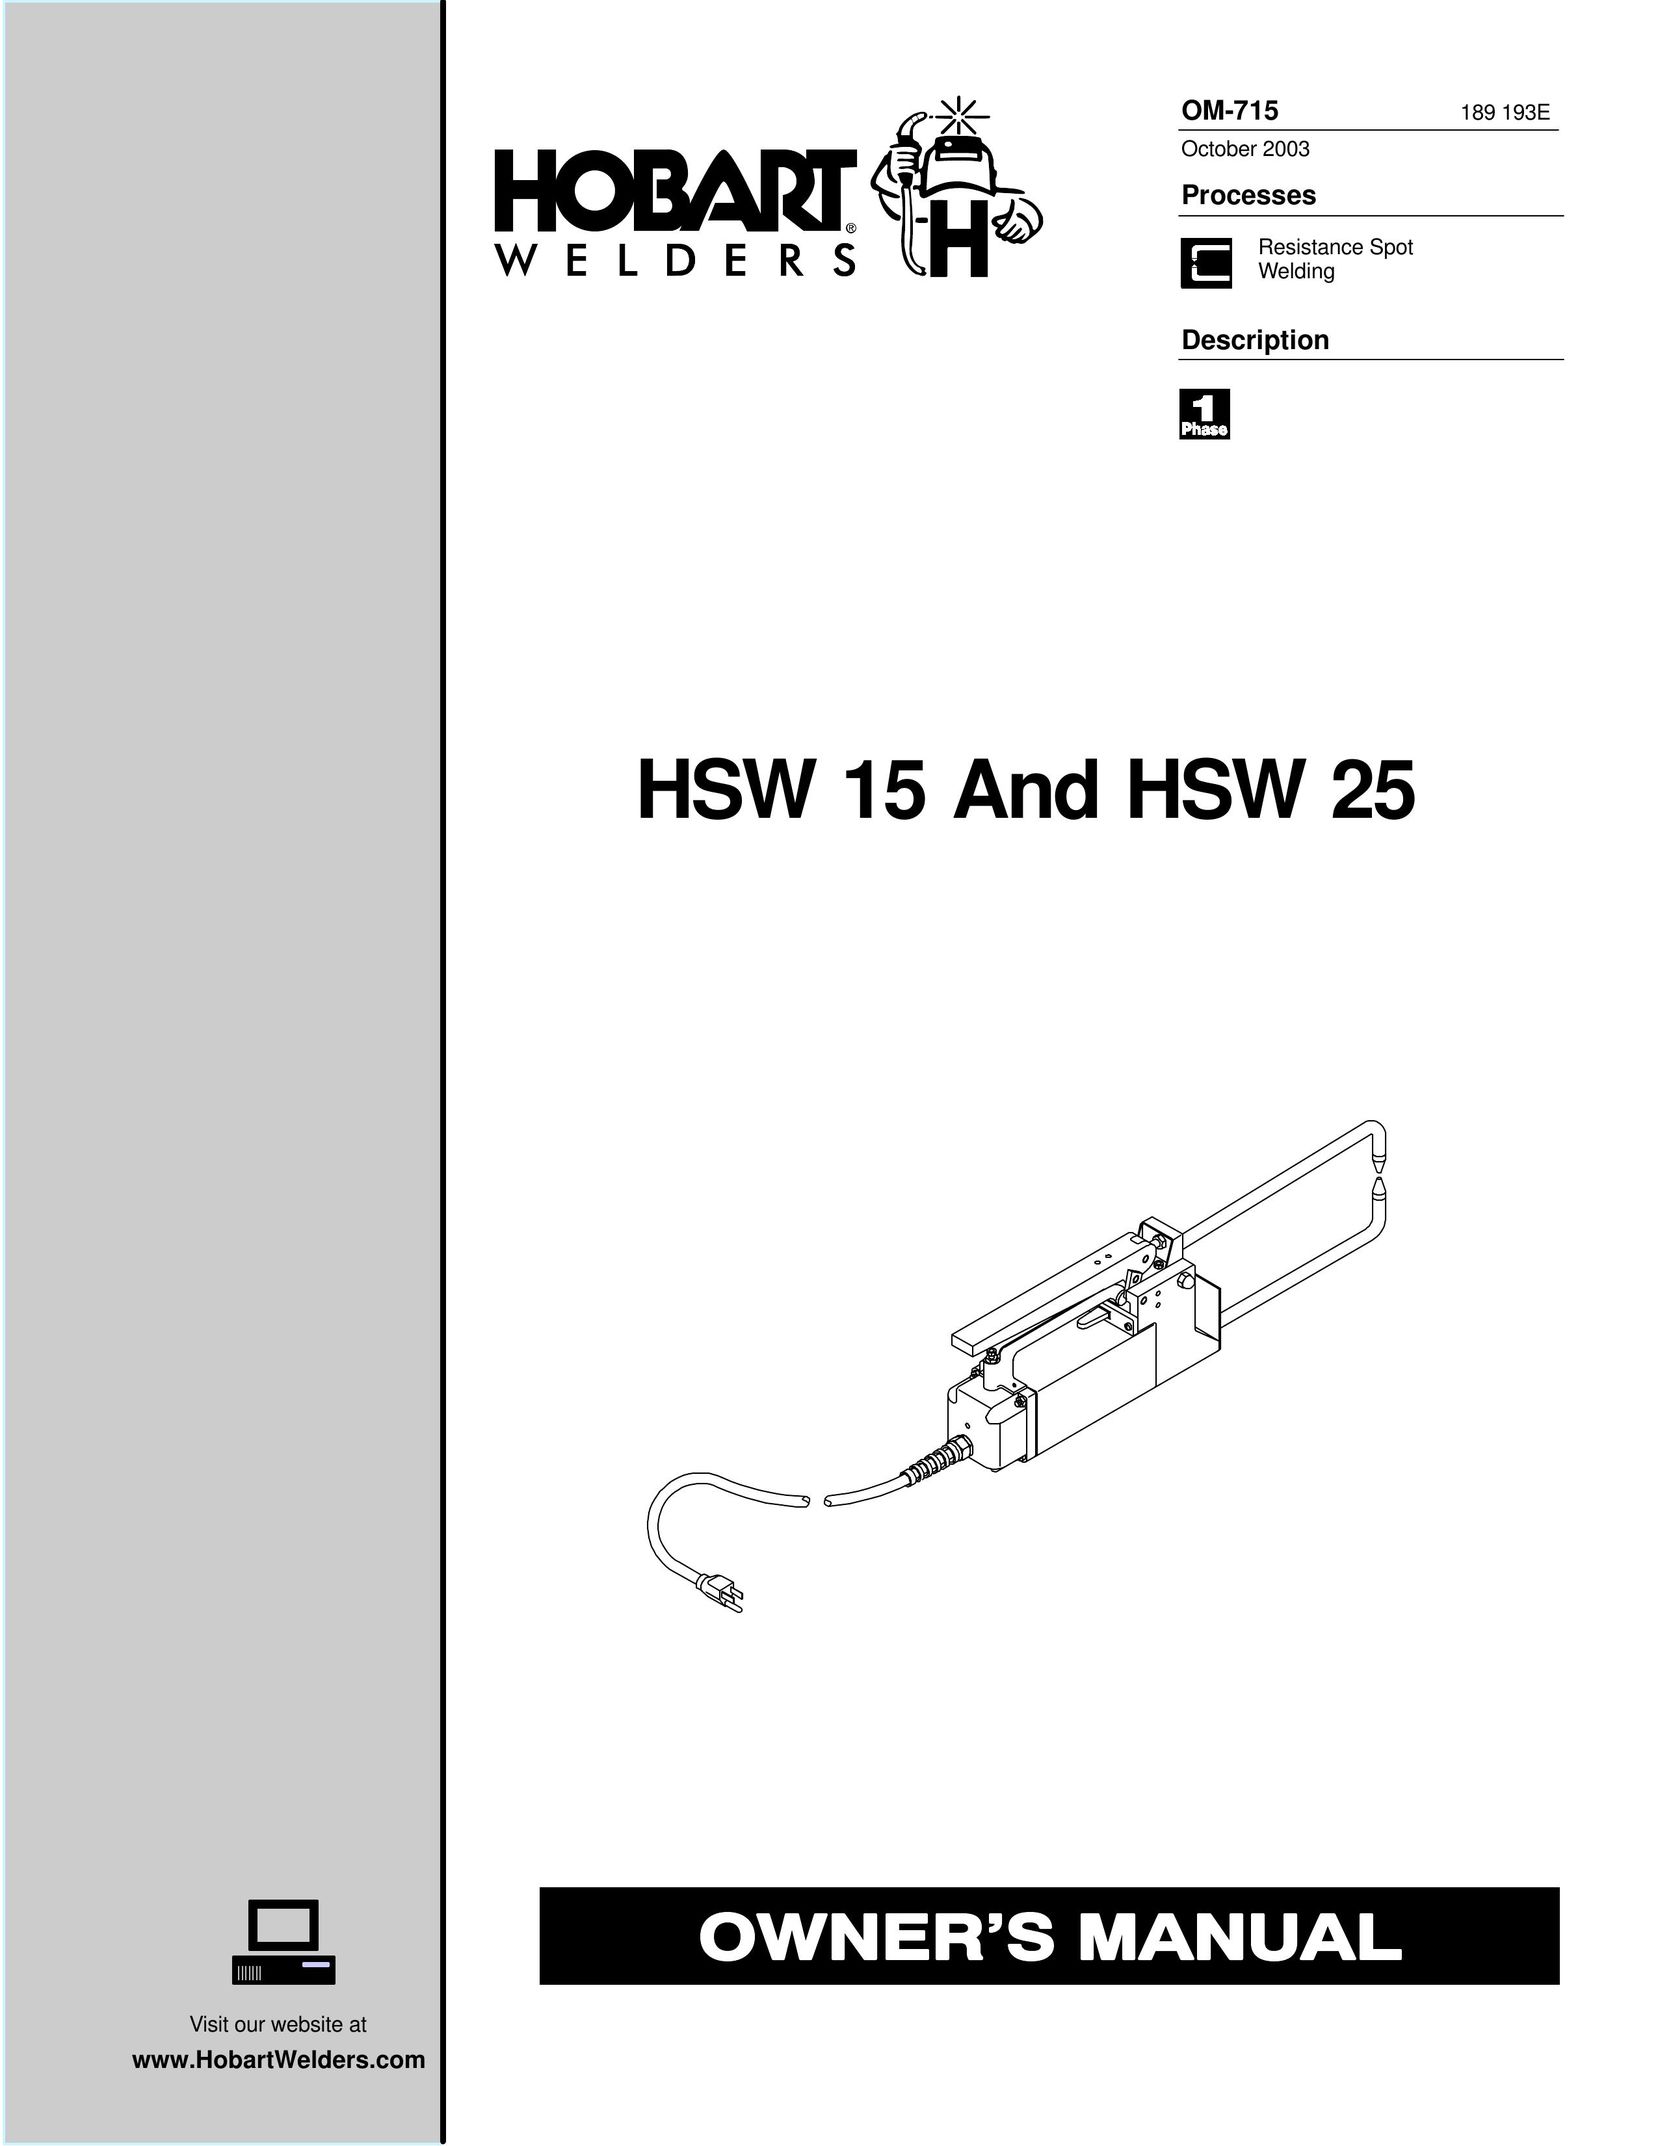 Hobart Welding Products HSW 15 Welder User Manual